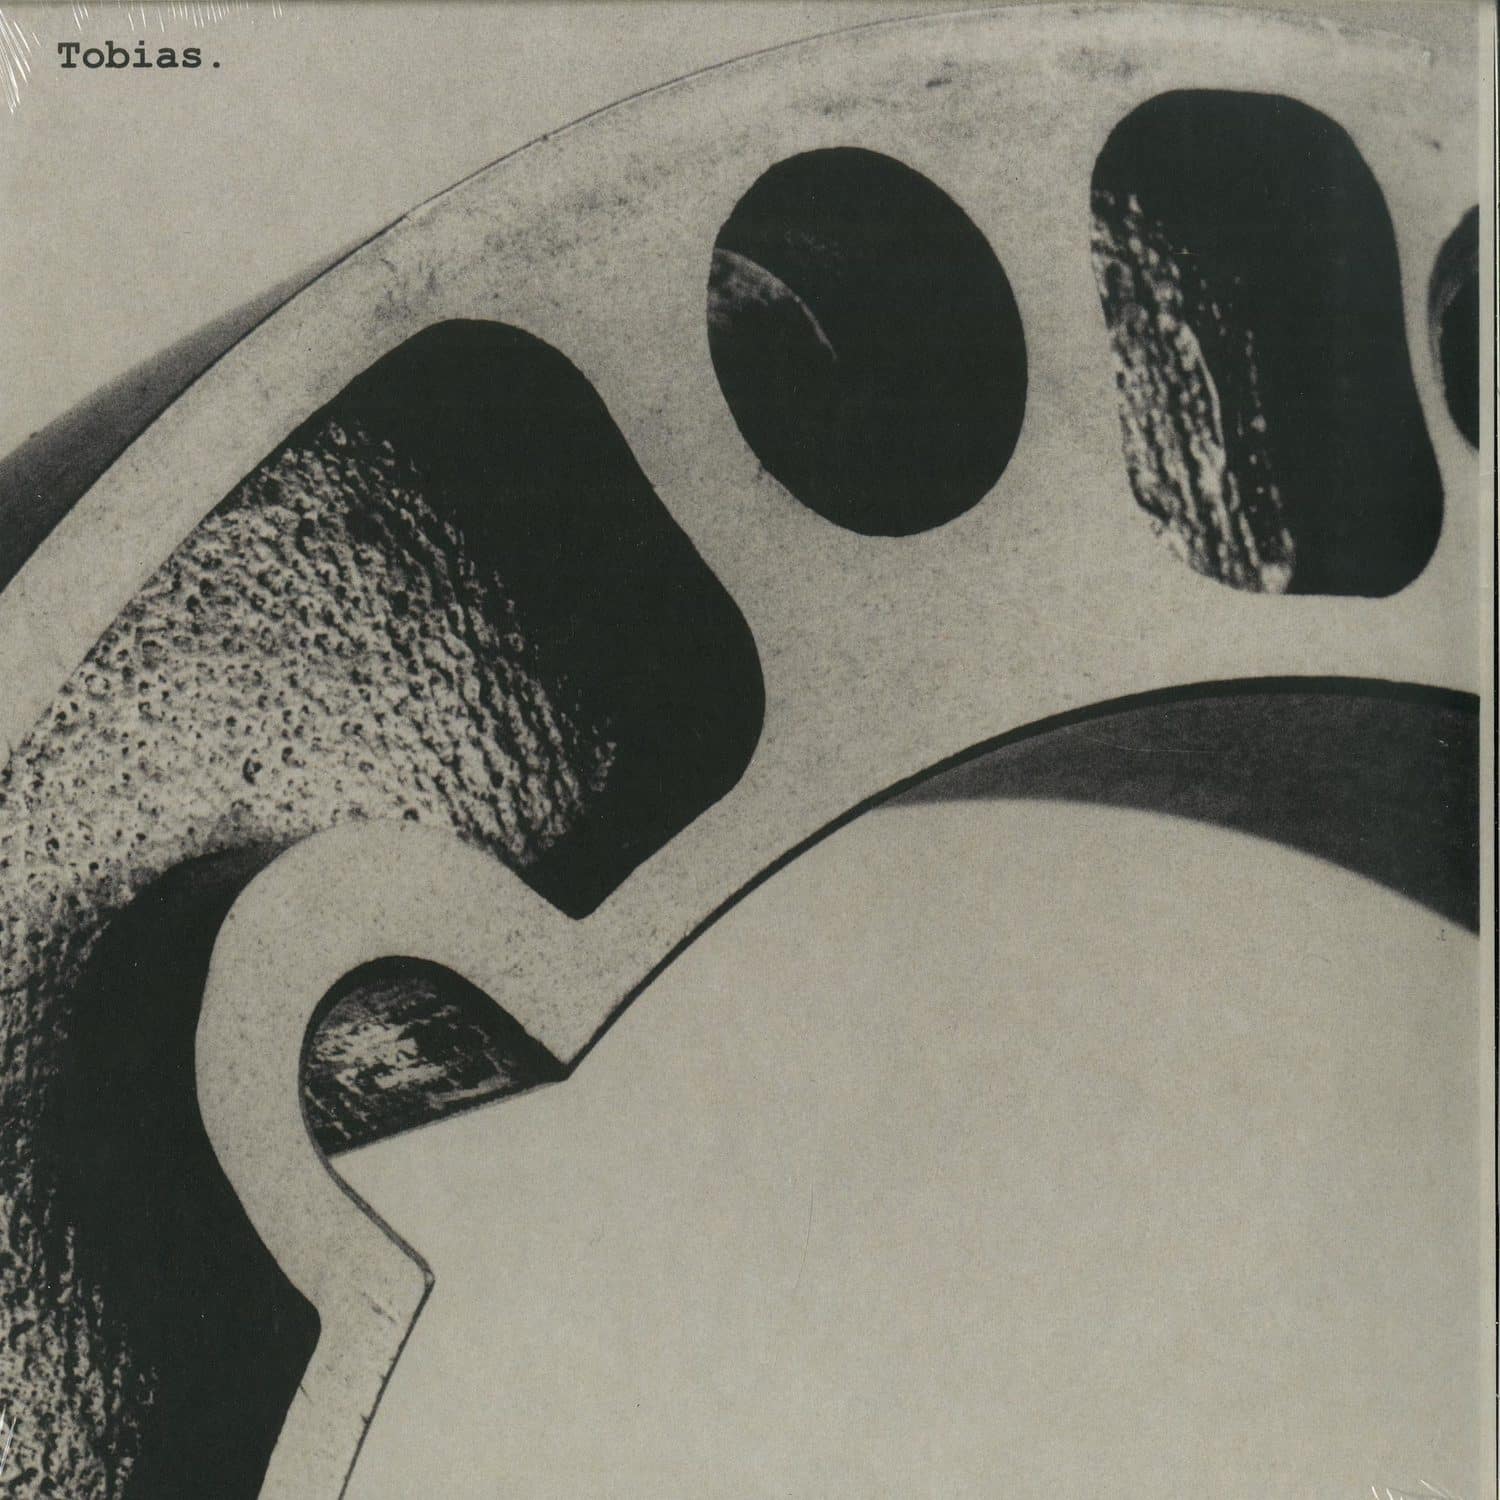 Tobias. - STUDIO WORKS 1986 - 1988 